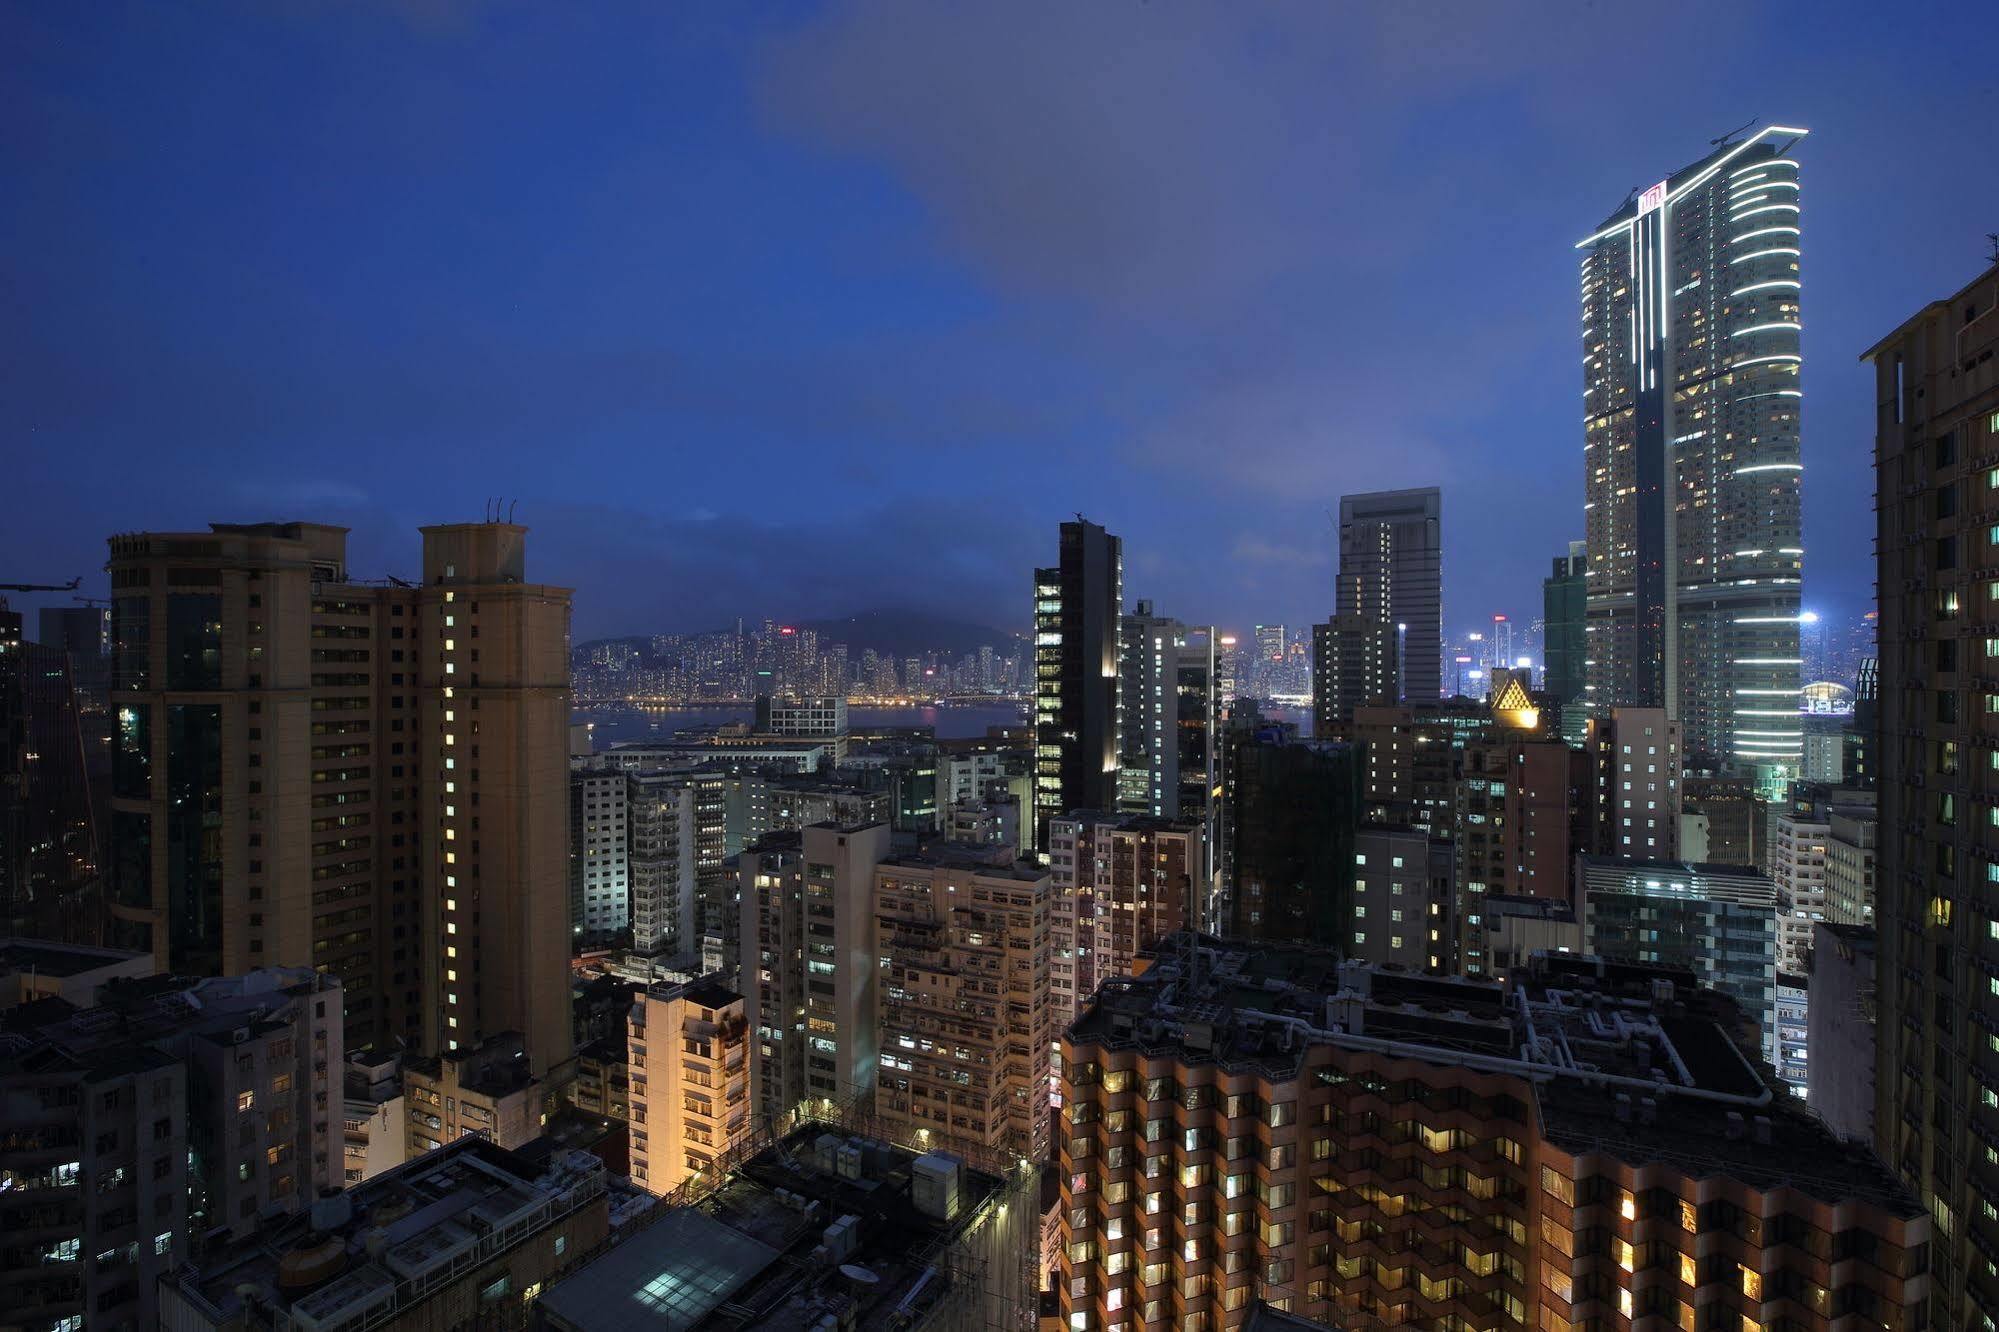 The Perkin Hotel Hongkong Buitenkant foto